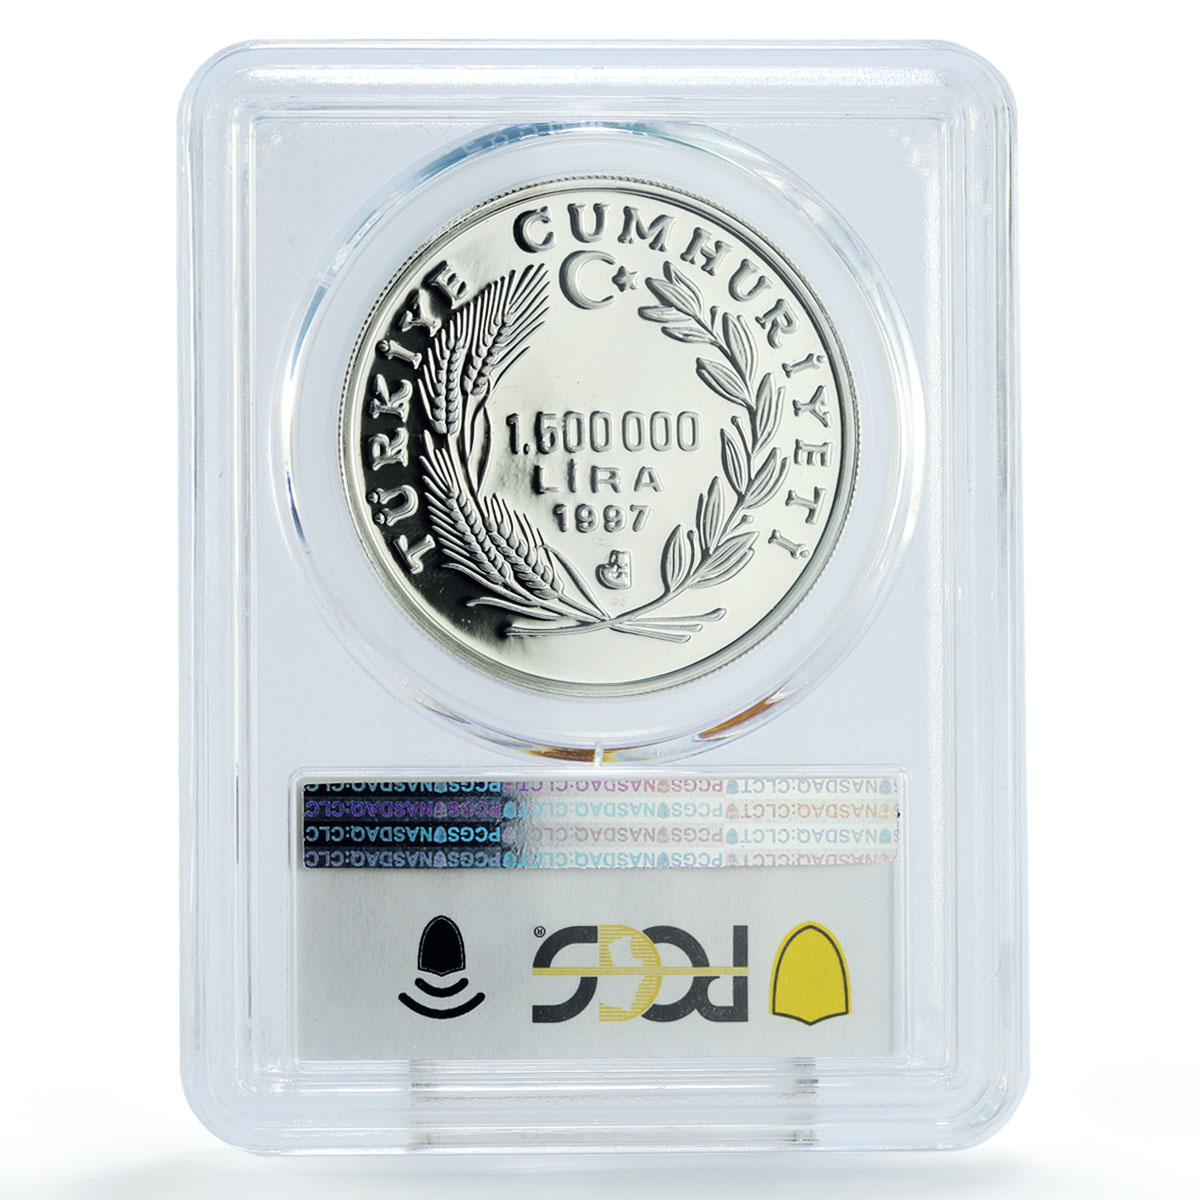 Turkey 15000000 lira Barbaros Hayreddin Ship Clipper PR69 PCGS silver coin 1997